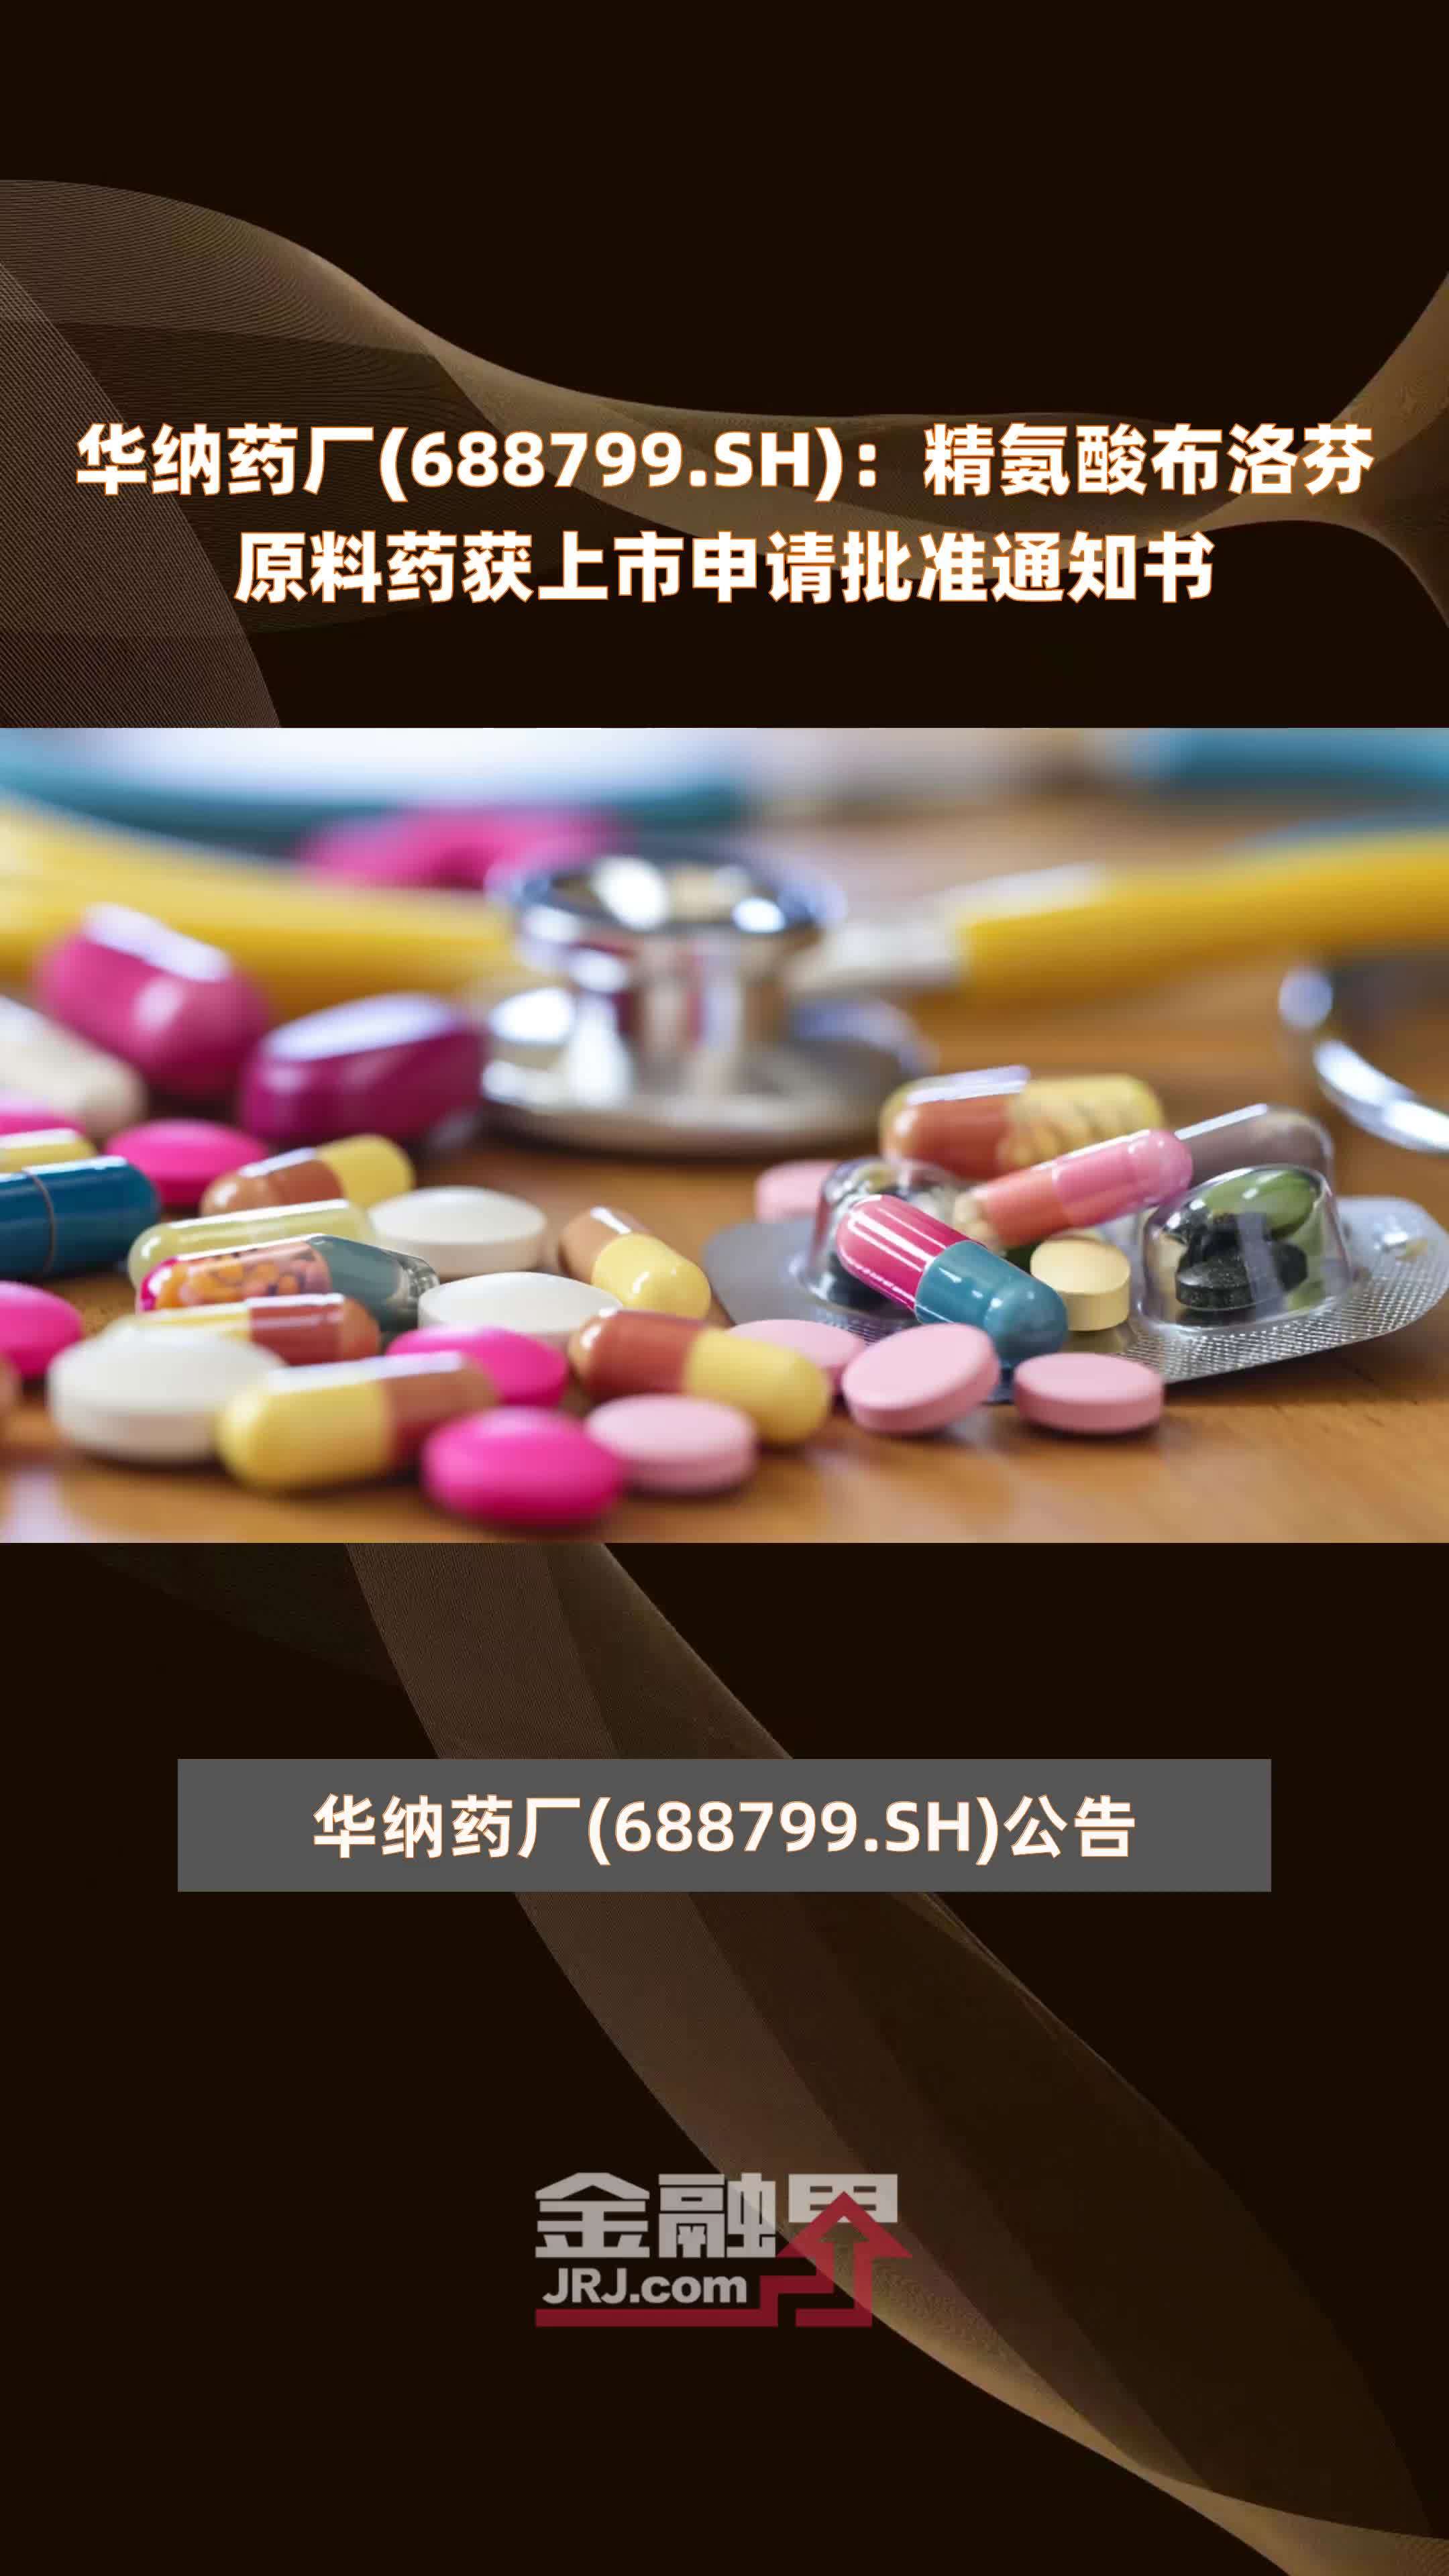 华纳药厂(688799.SH)：精氨酸布洛芬原料药获上市申请批准通知书 |快报